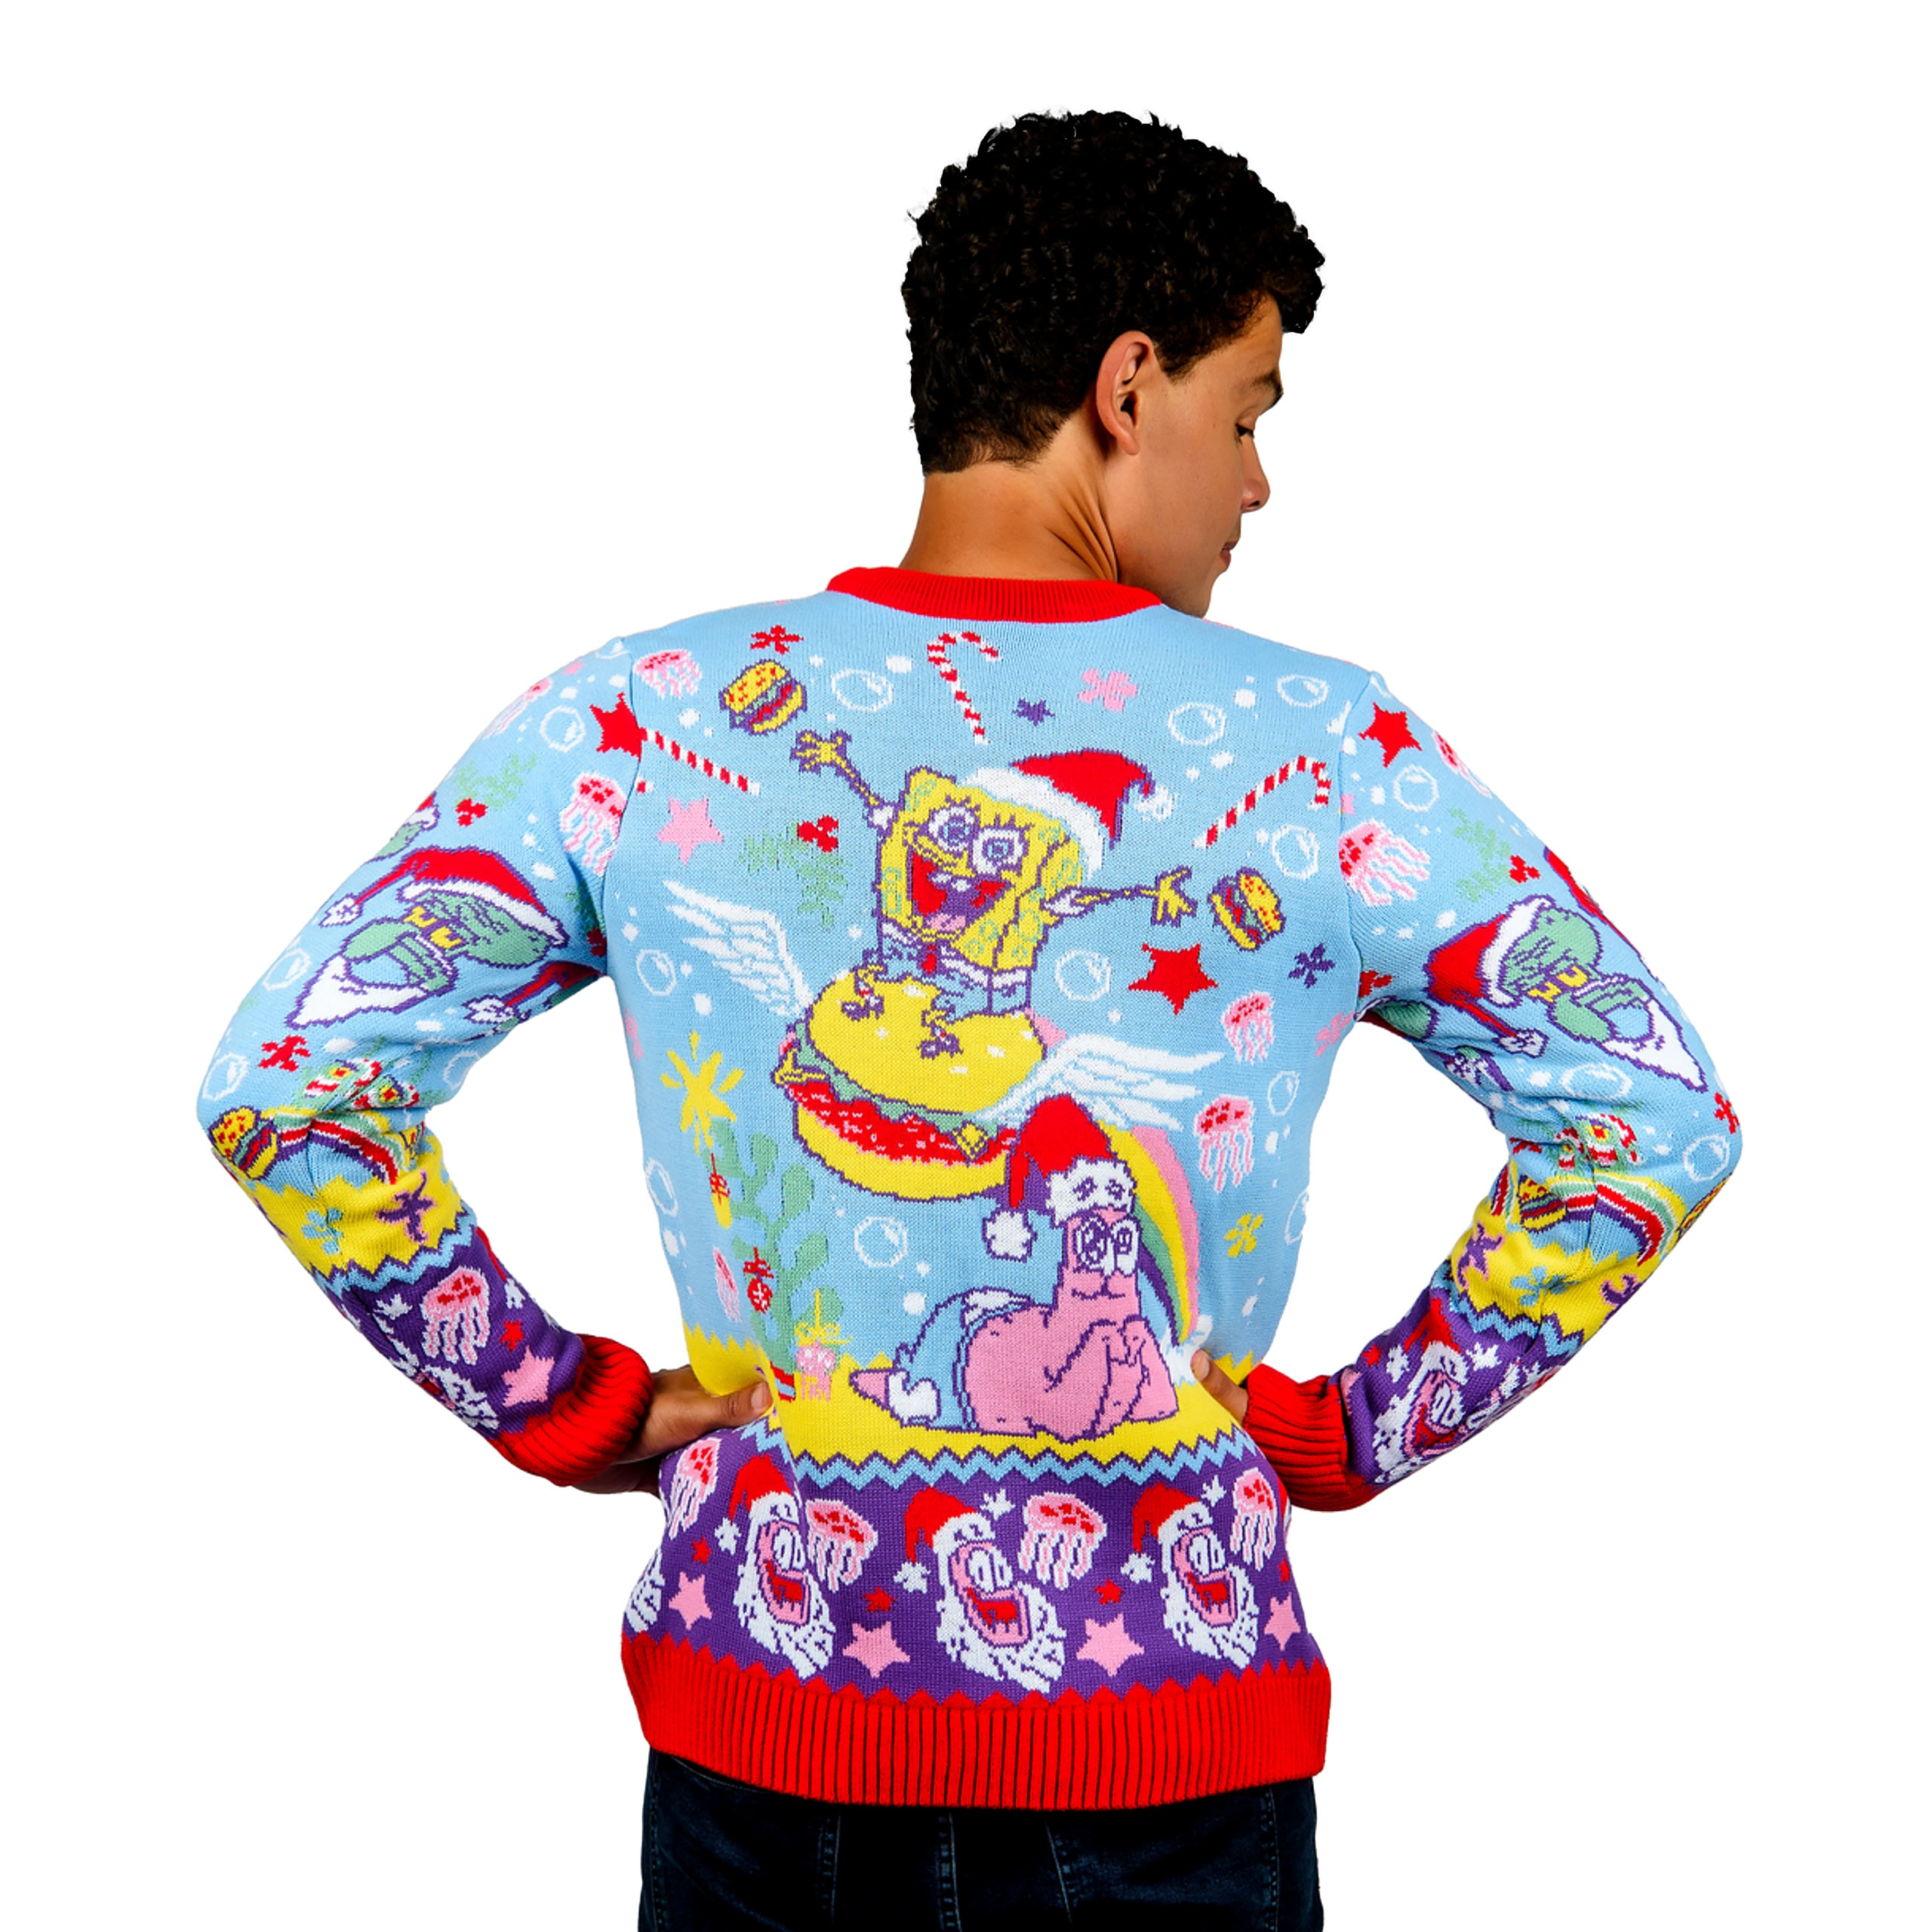 SpongeBob - Seasons Greetings Knitted Sweater